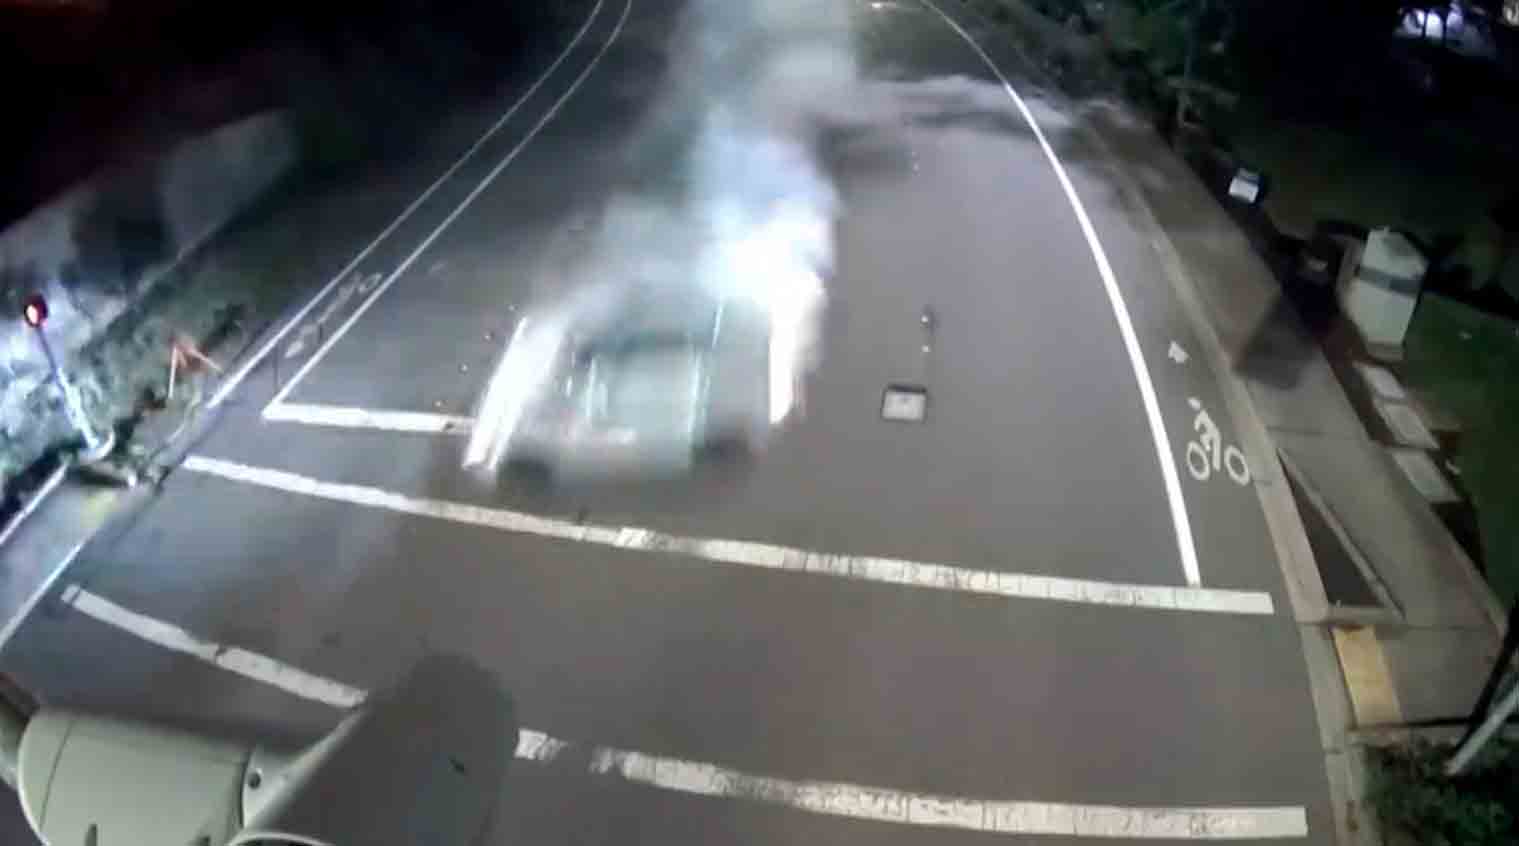 ビデオは160km/hで道路を外れて27歳の若者を死亡させたポルシェの瞬間を捉えています